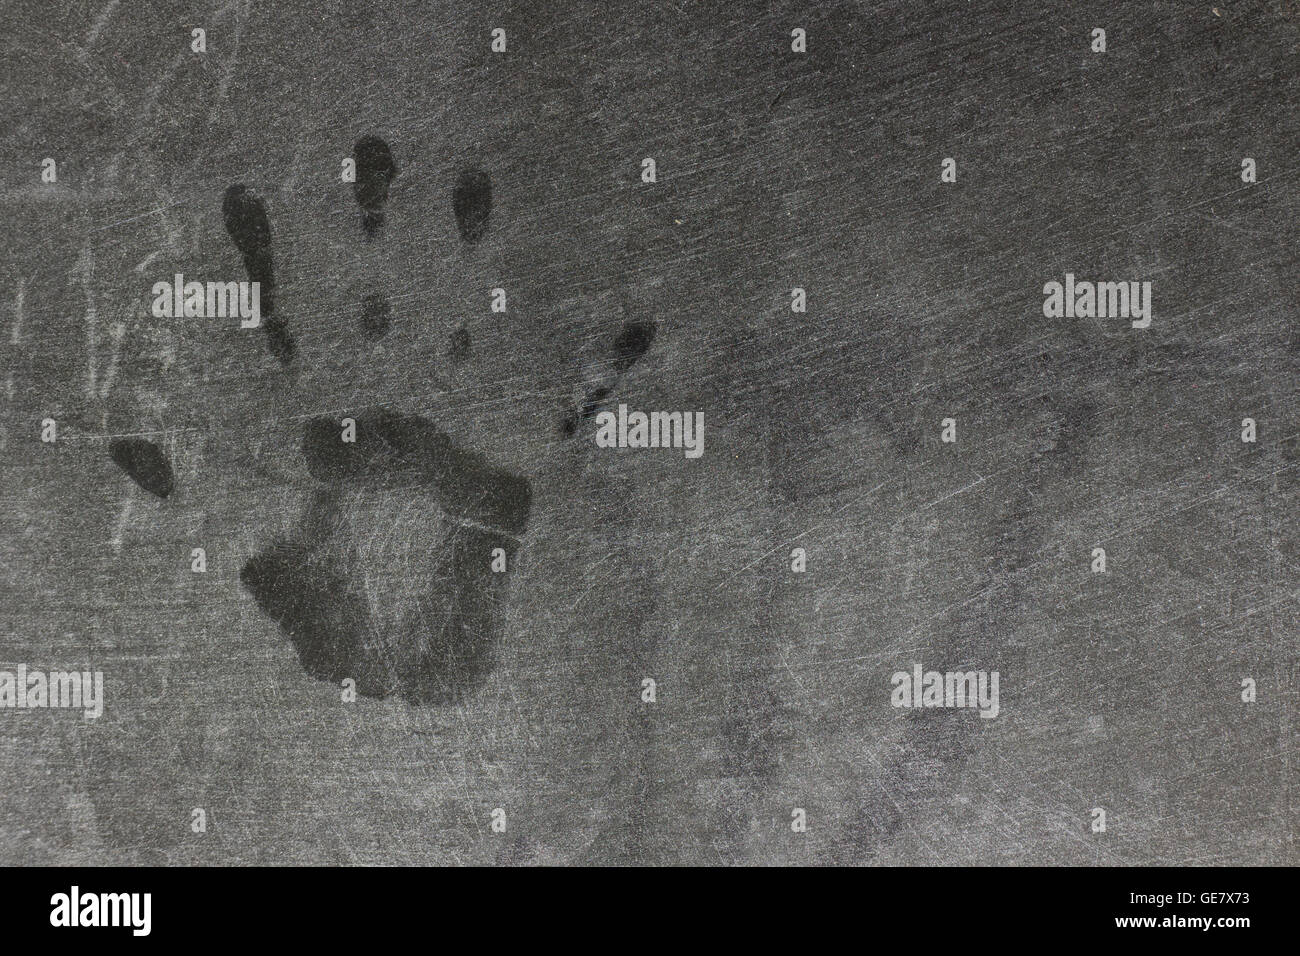 Des empreintes digitales sur une zone poussiéreuse.sur fond noir Banque D'Images